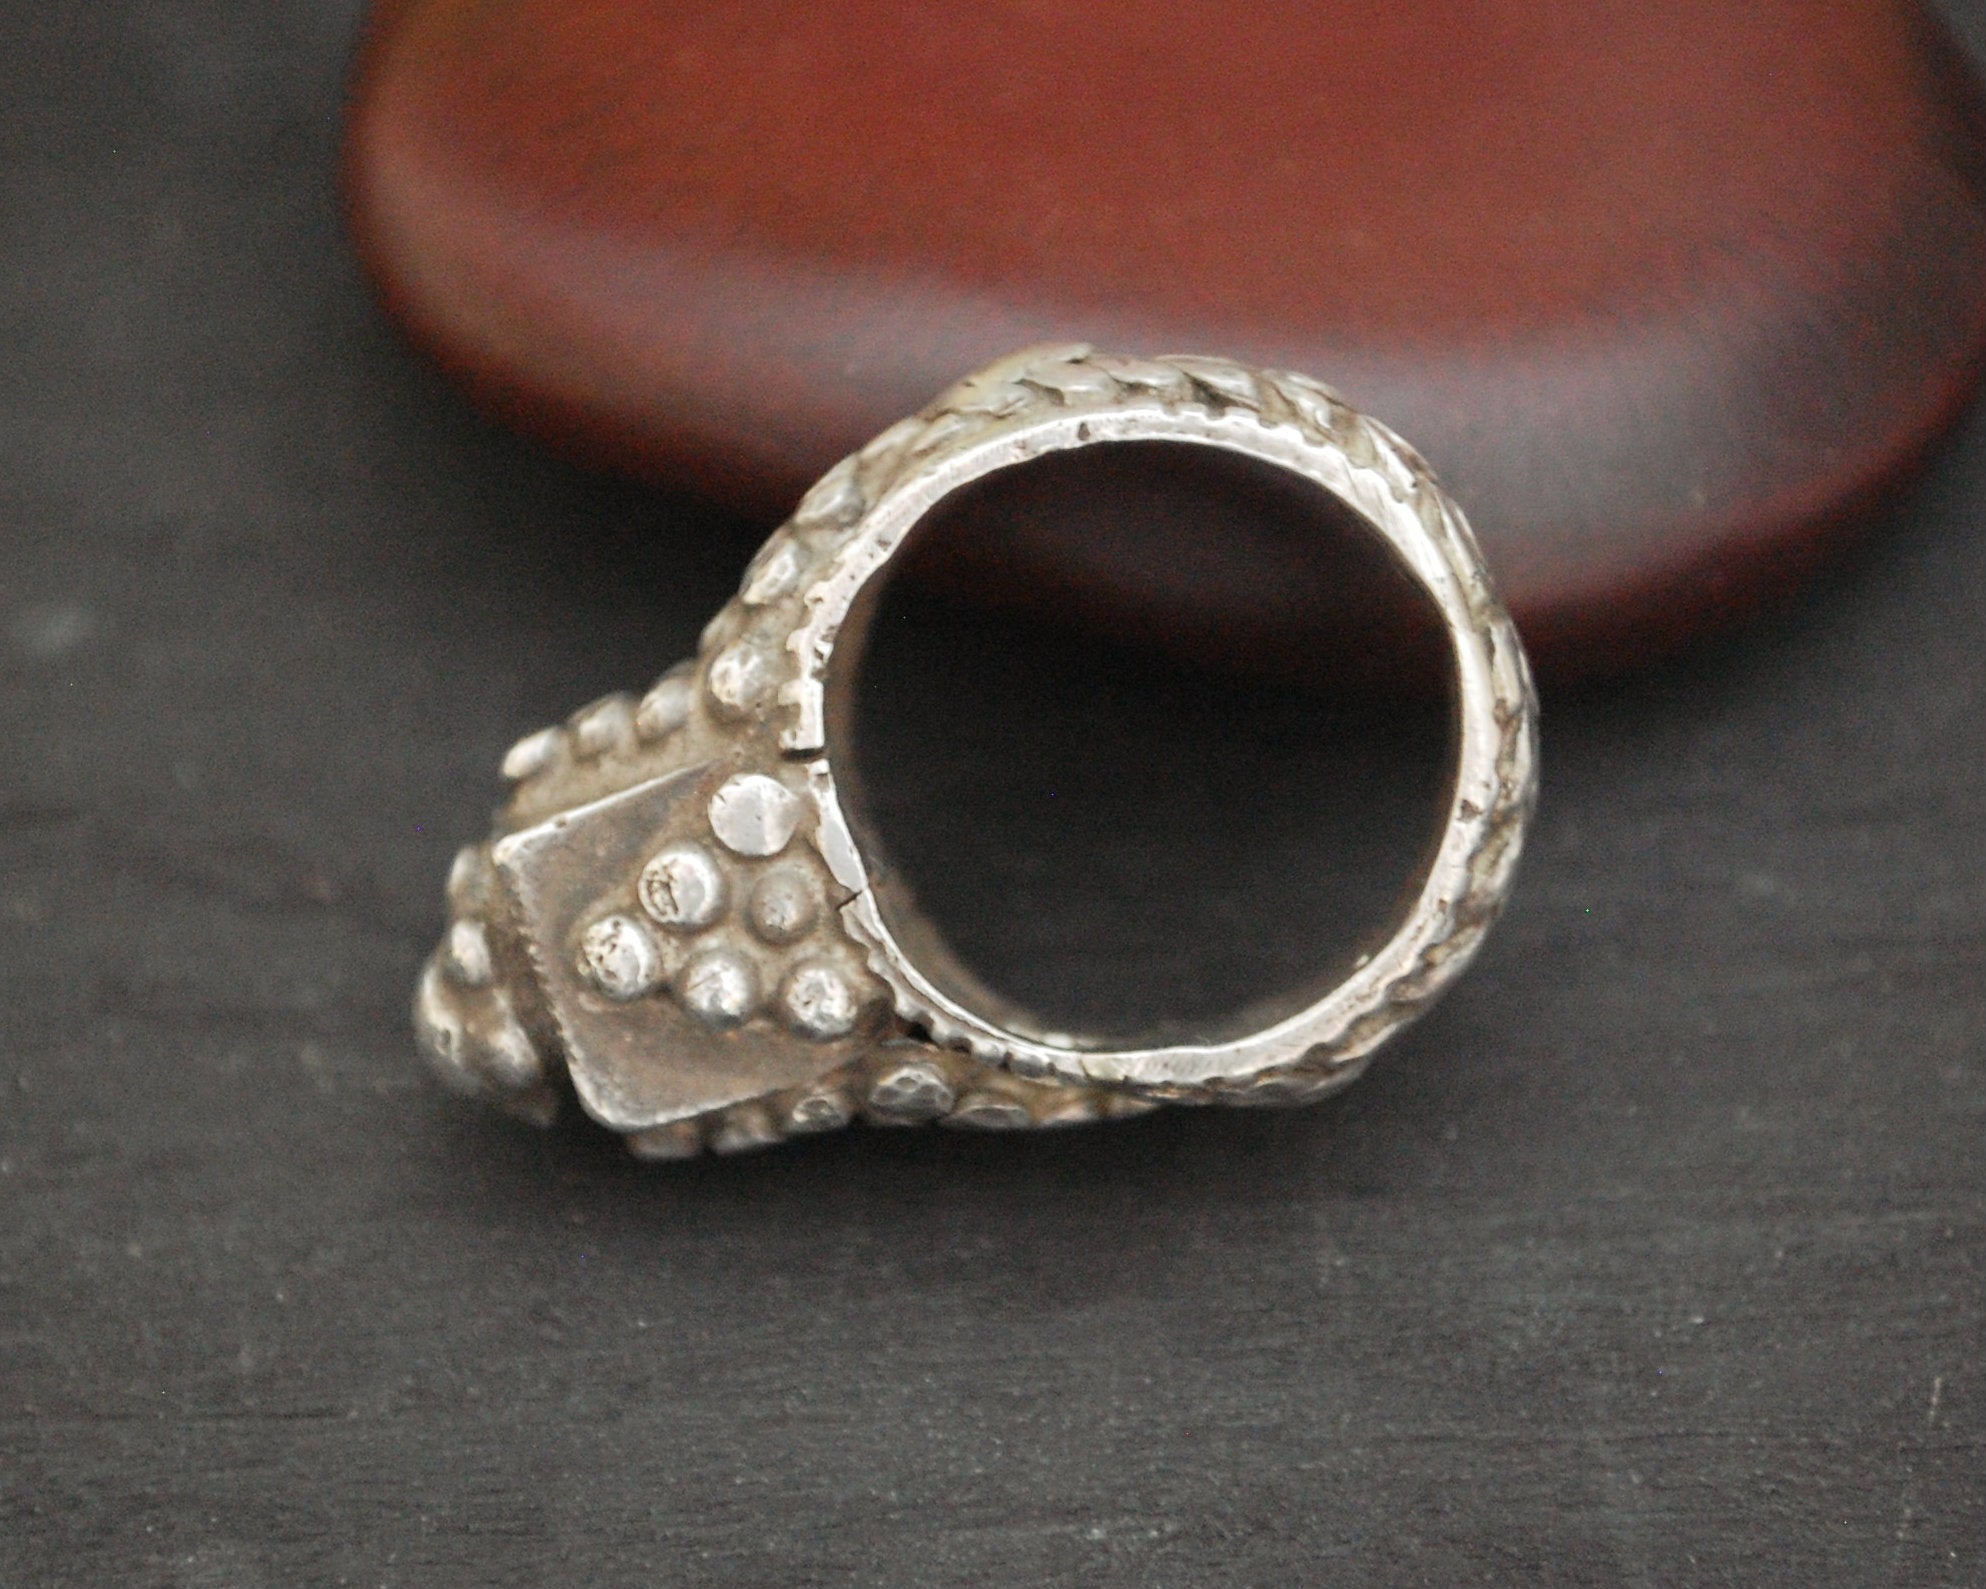 Antique Yemeni Ring - Size 9.5